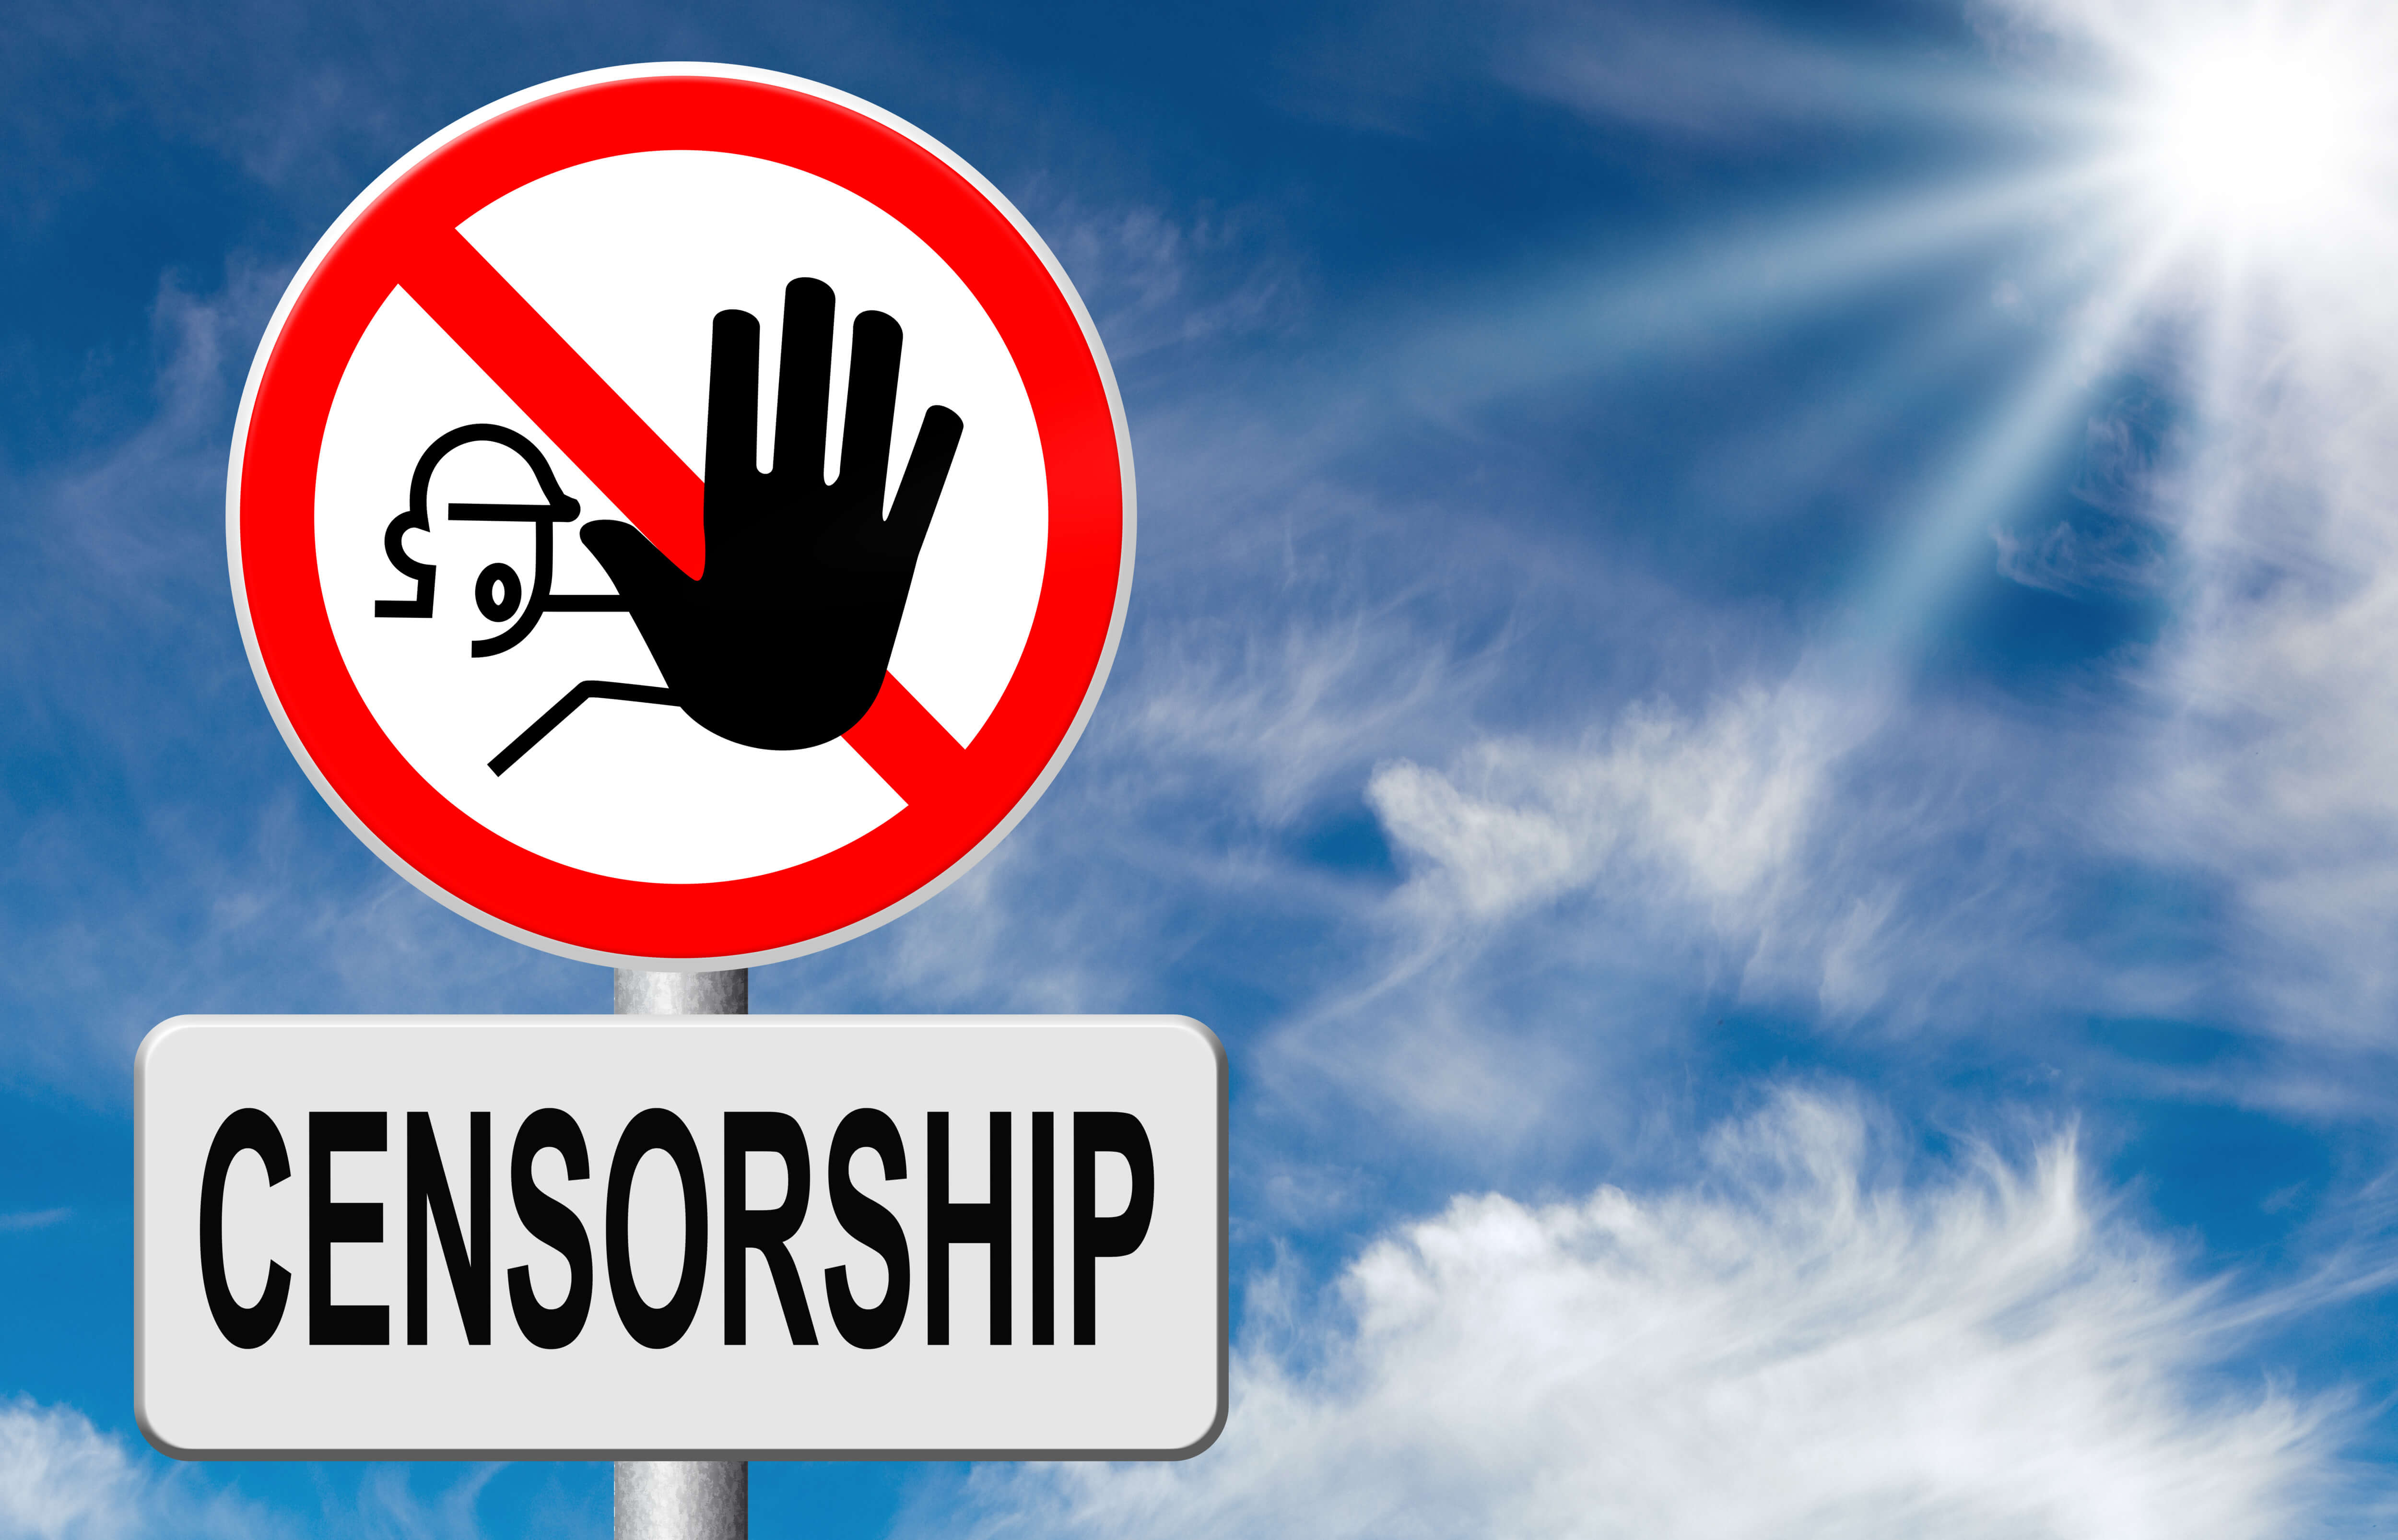 Stop Censorship